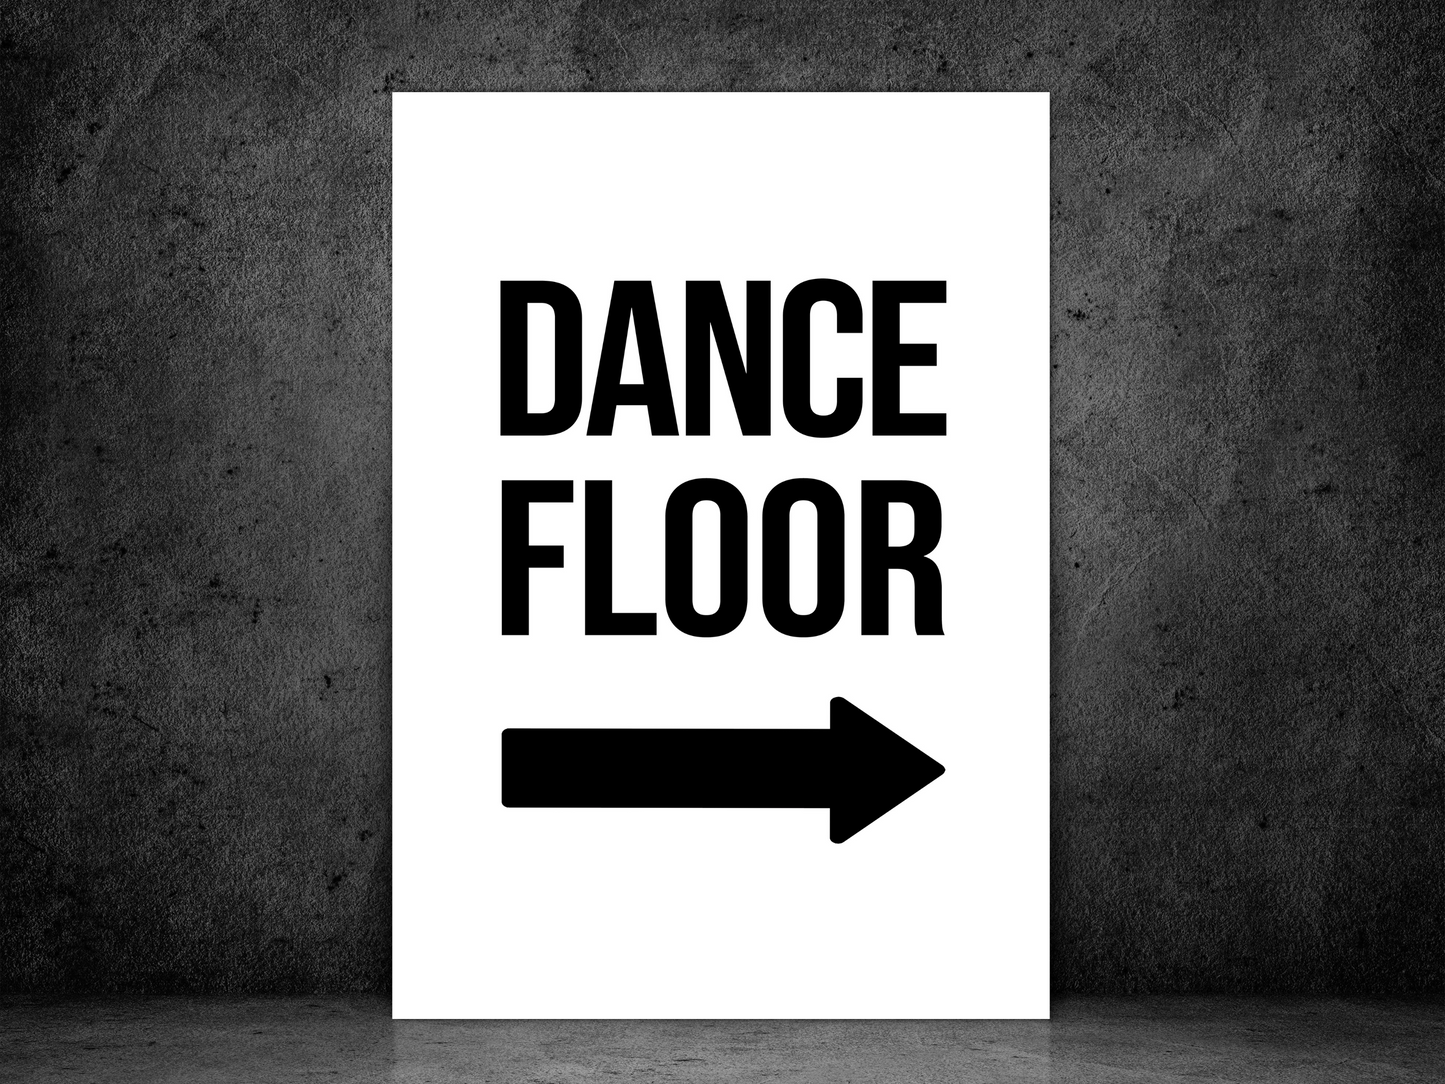 Dance Floor (Right Arrow)